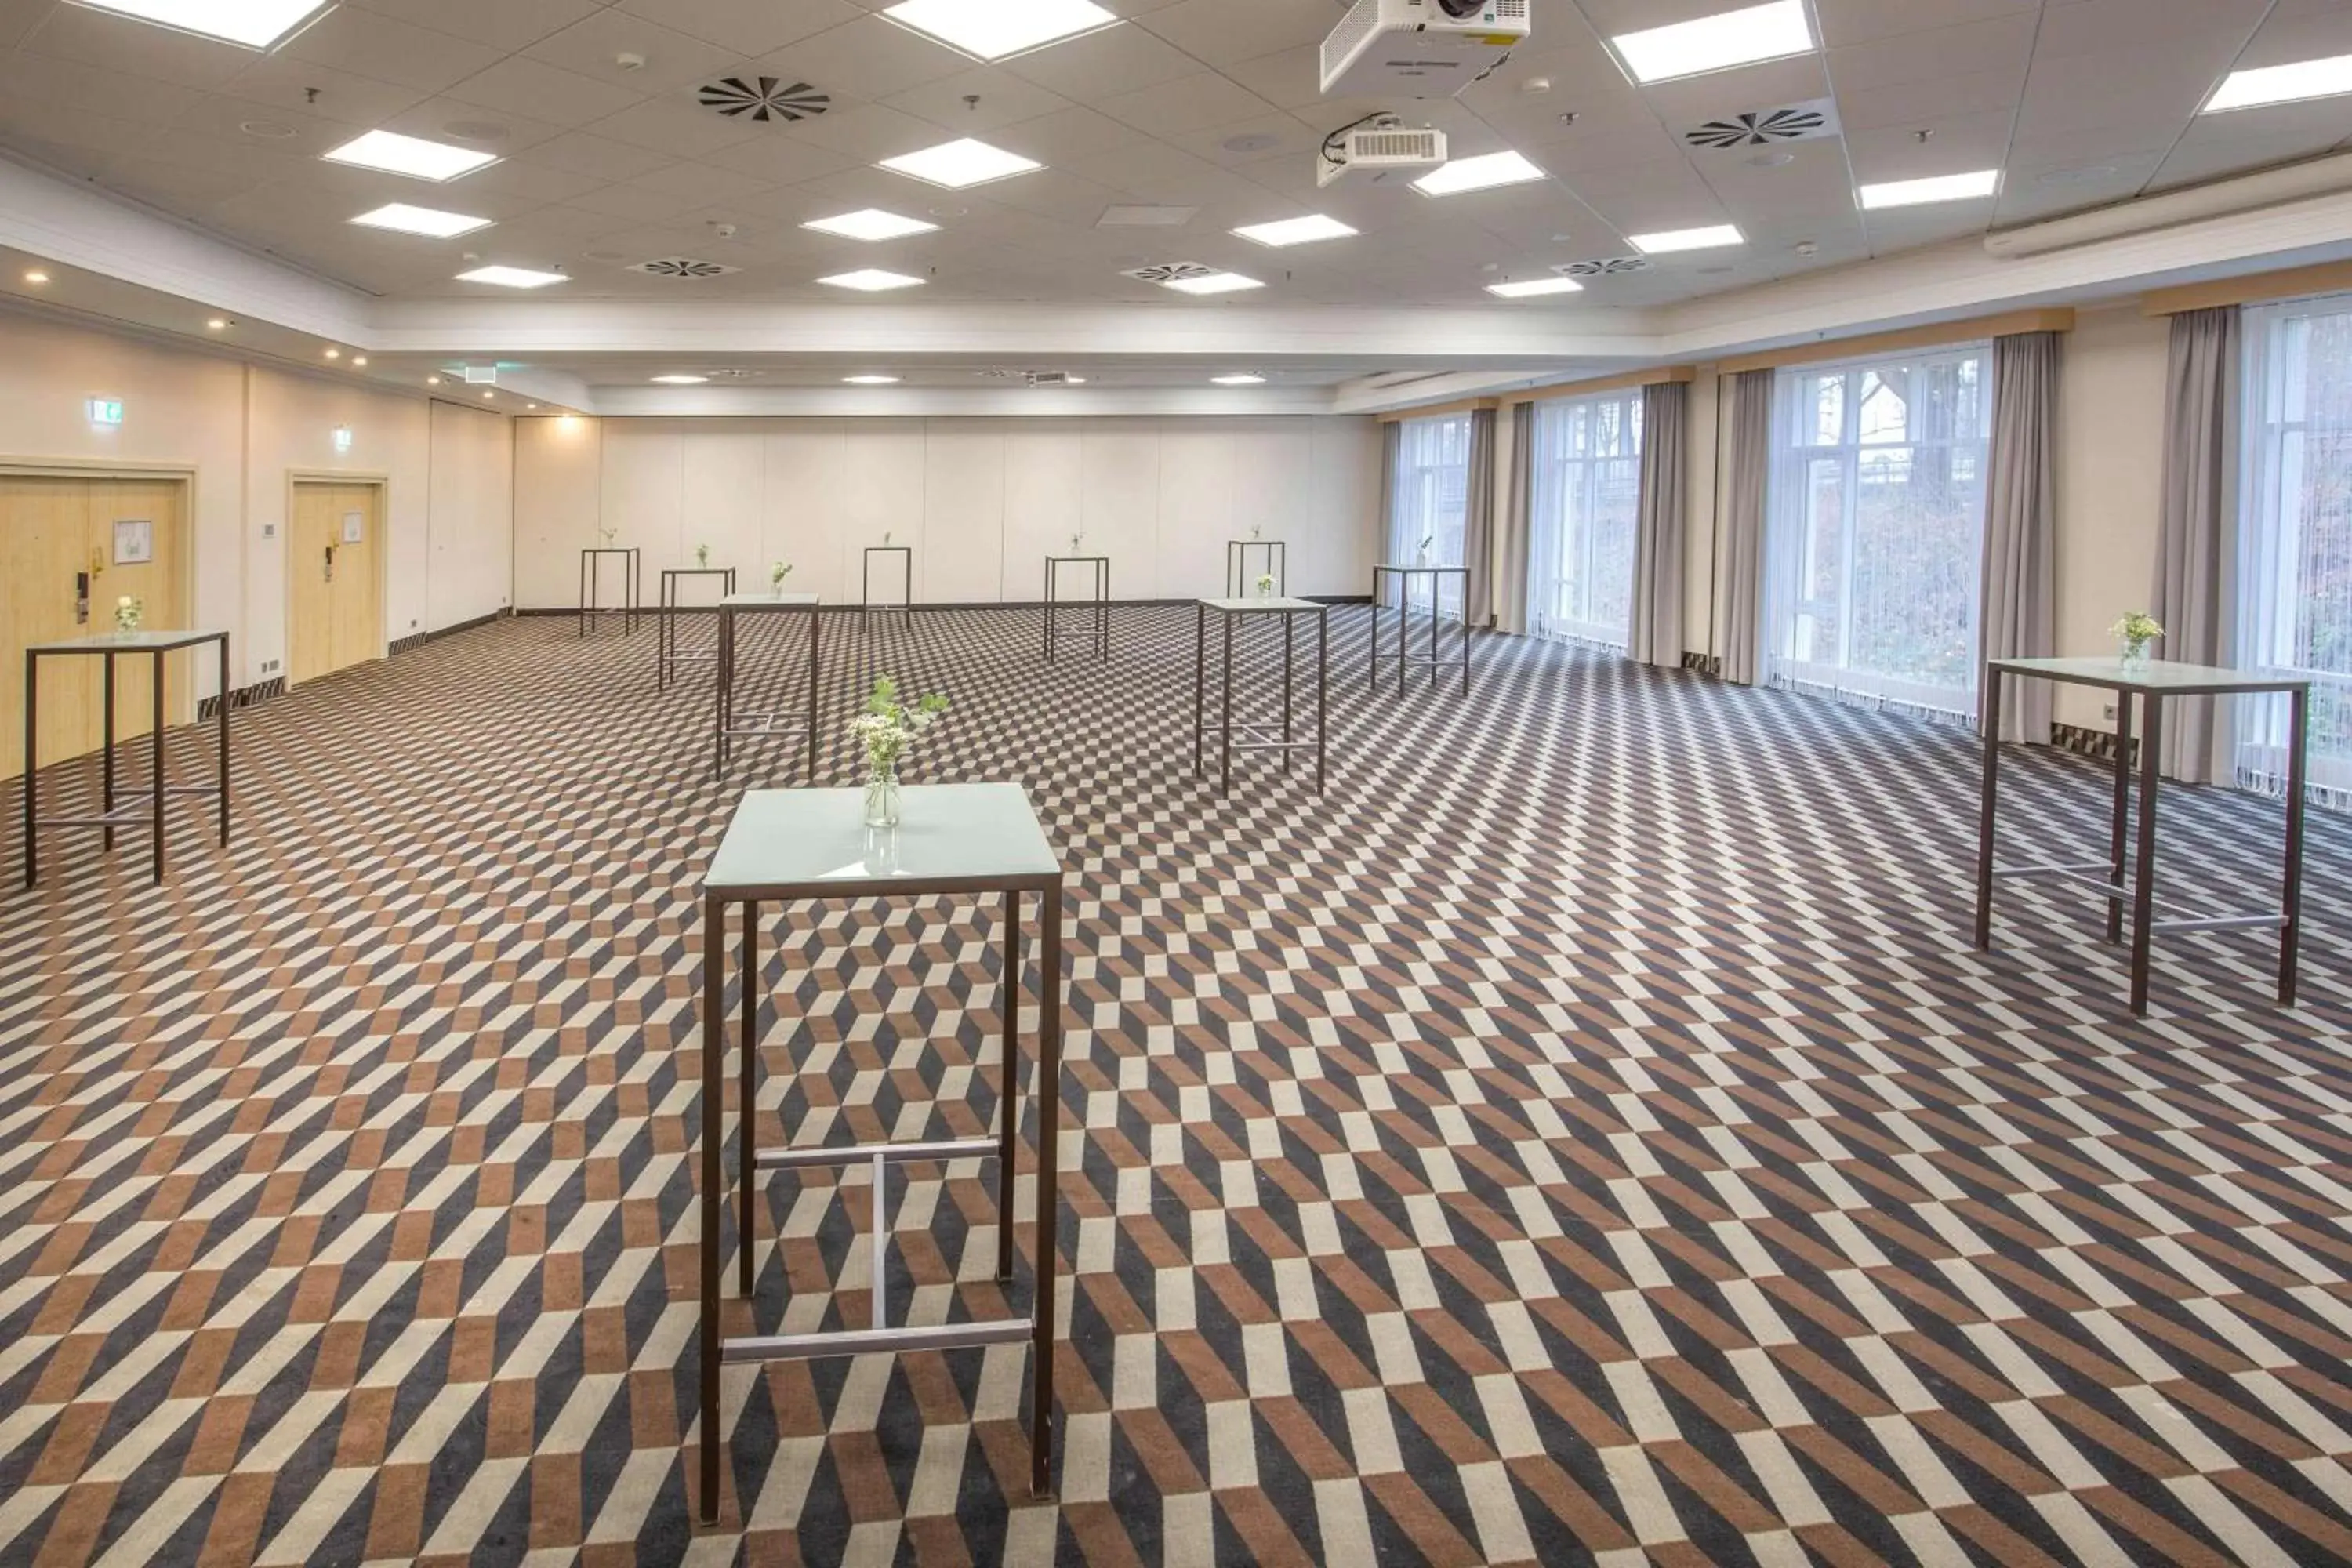 Lobby or reception in Radisson Blu Hotel Dortmund